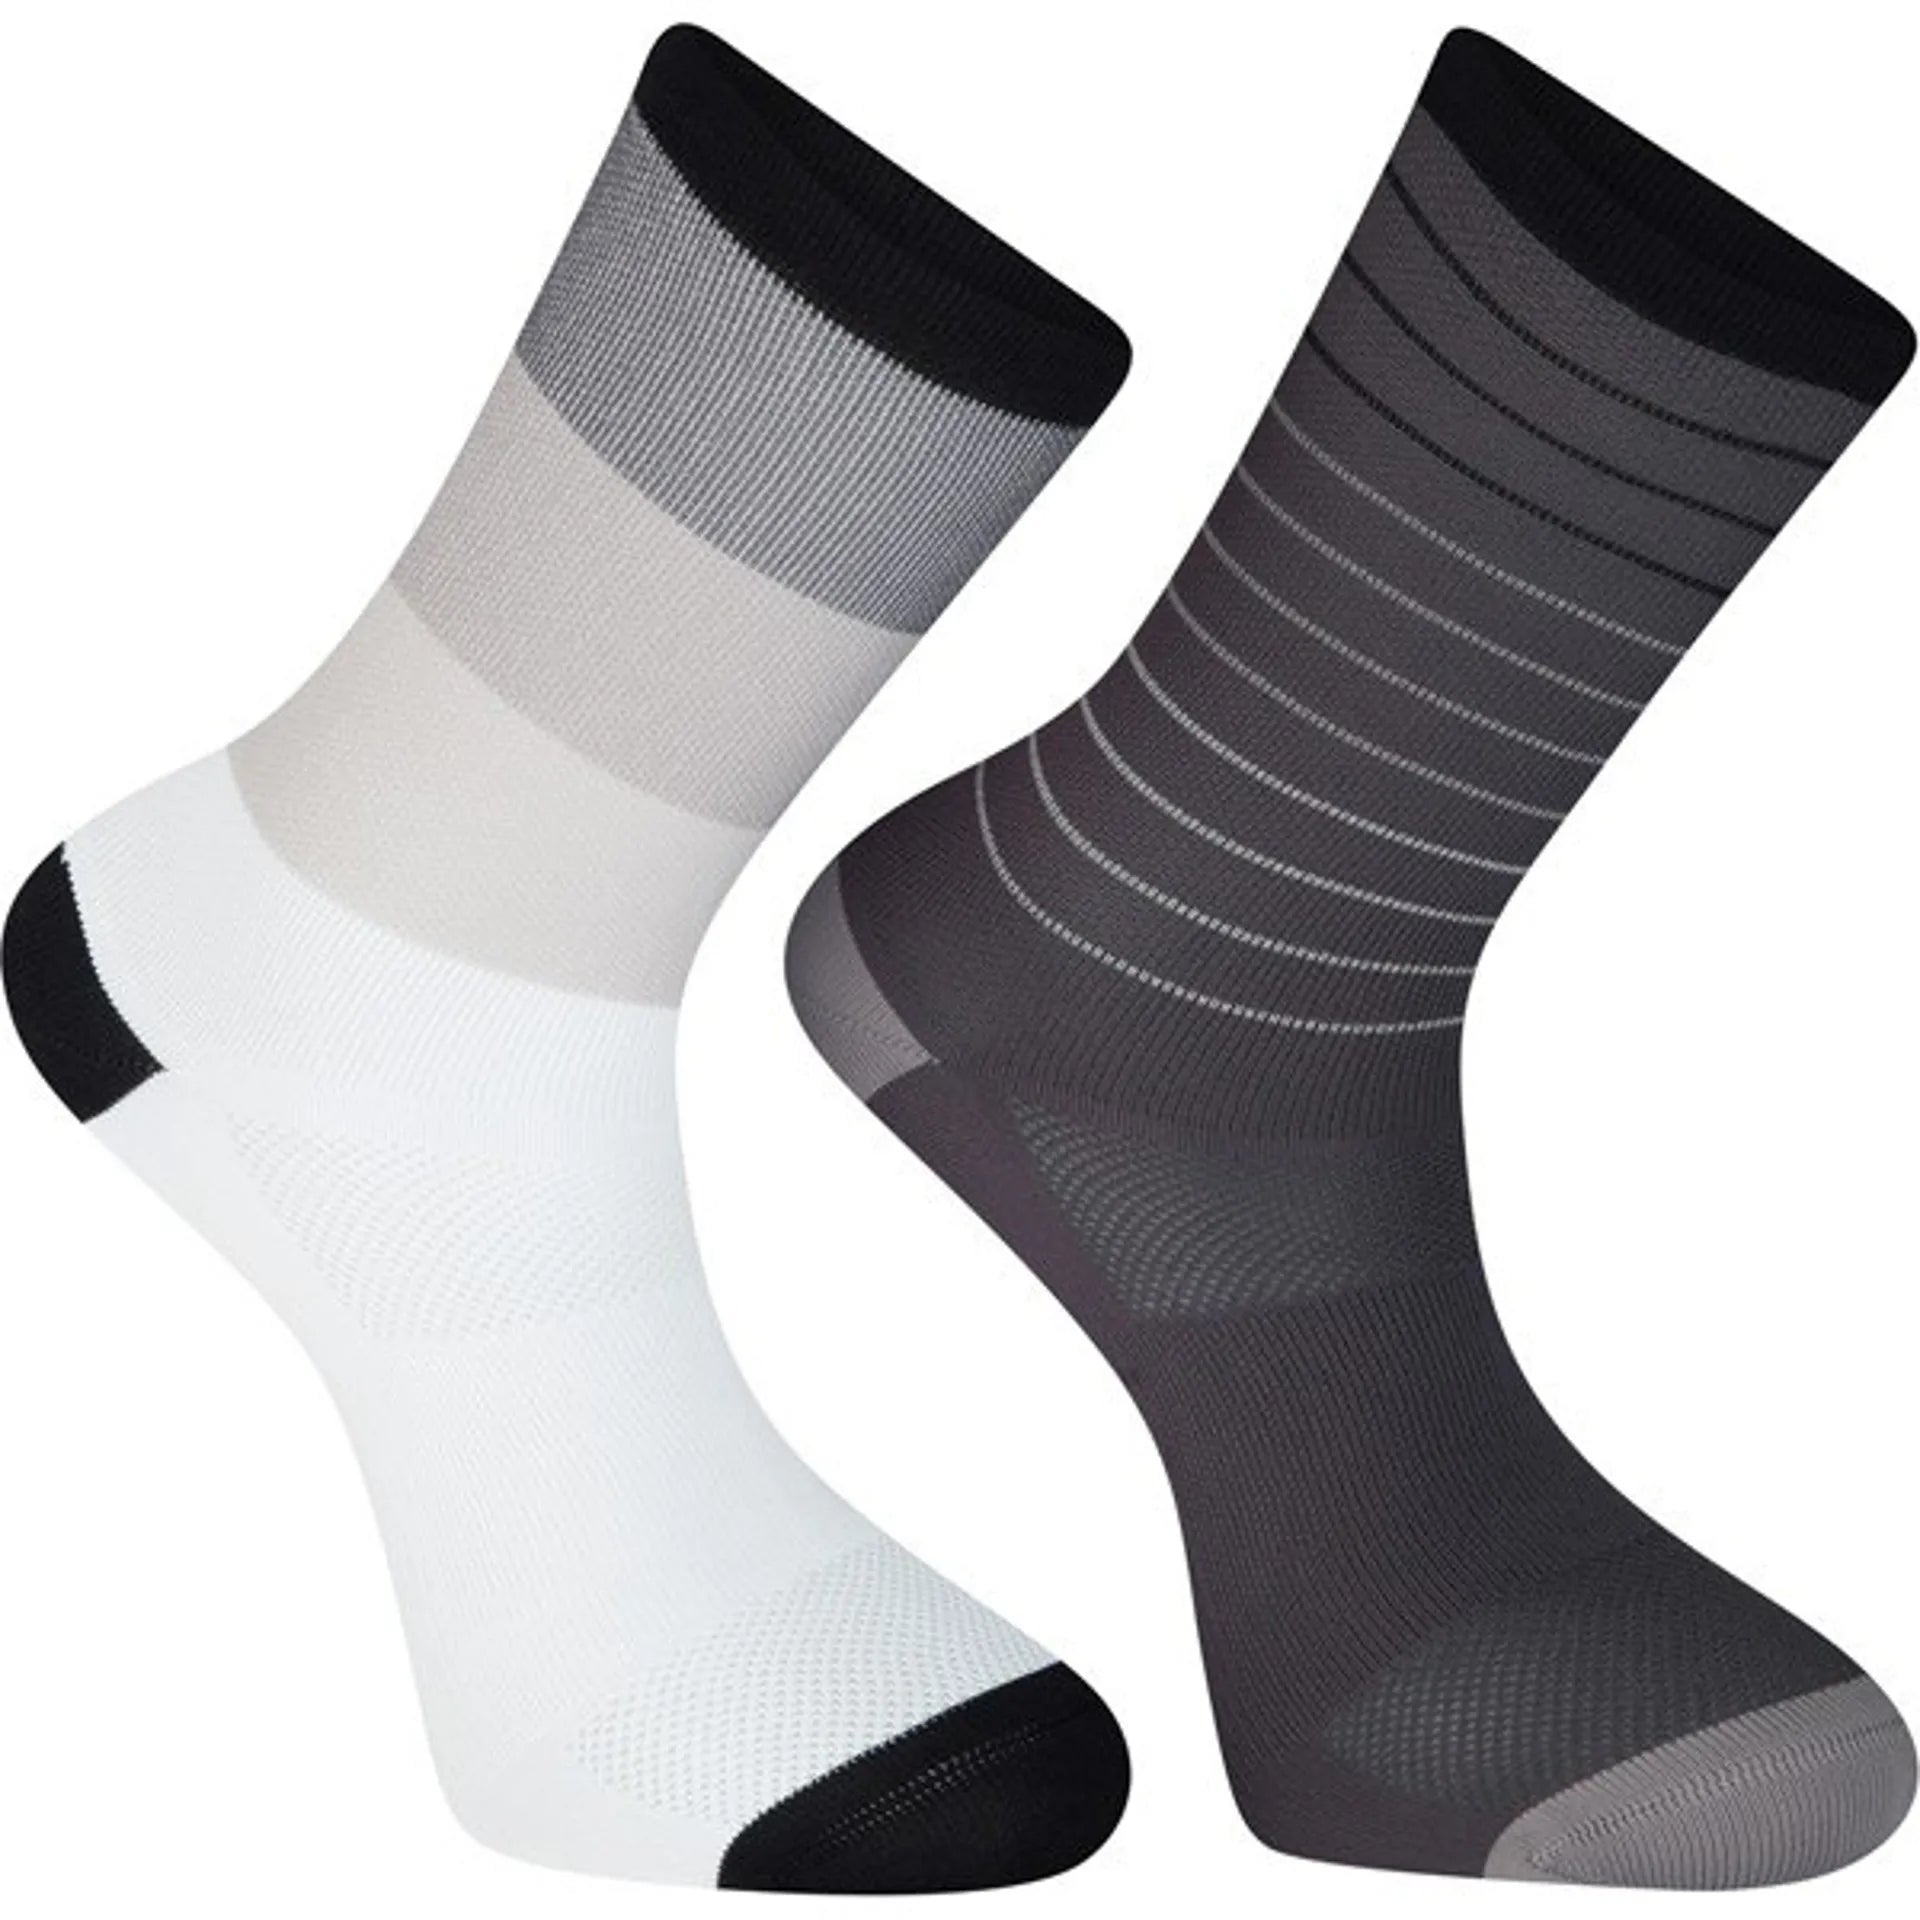 Madison Socks - Sportive - Long Socks - 2 Pack